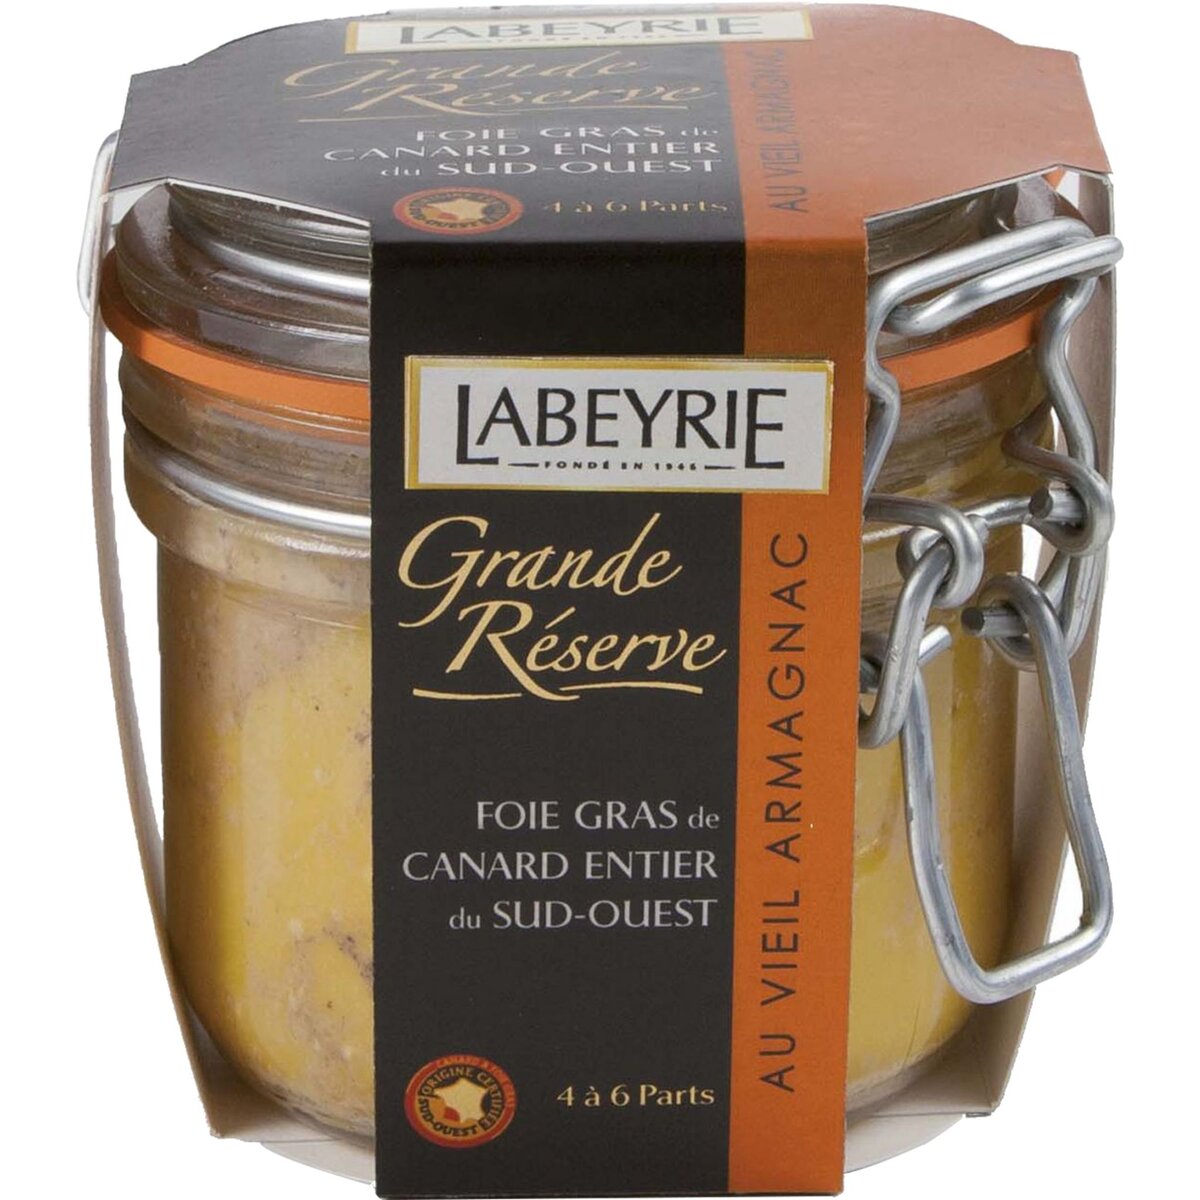 LABEYRIE Foie gras de canard entier du sud-ouest au vieil Armagnac IGP 4-6 parts 190g